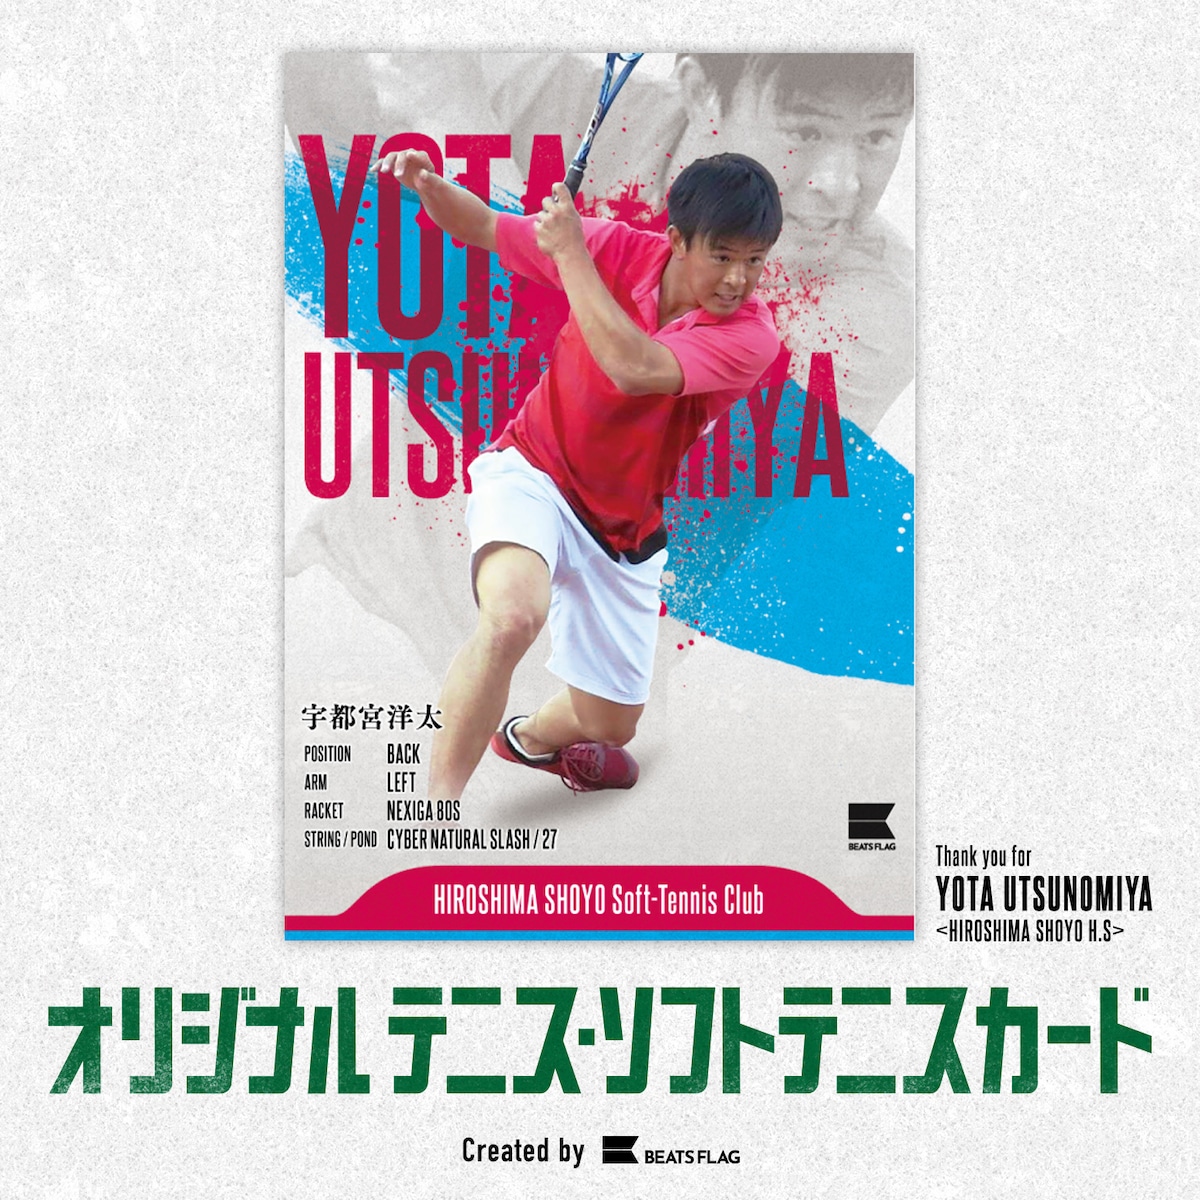 広島翔洋高校・宇都宮選手オリジナルソフトテニスカード